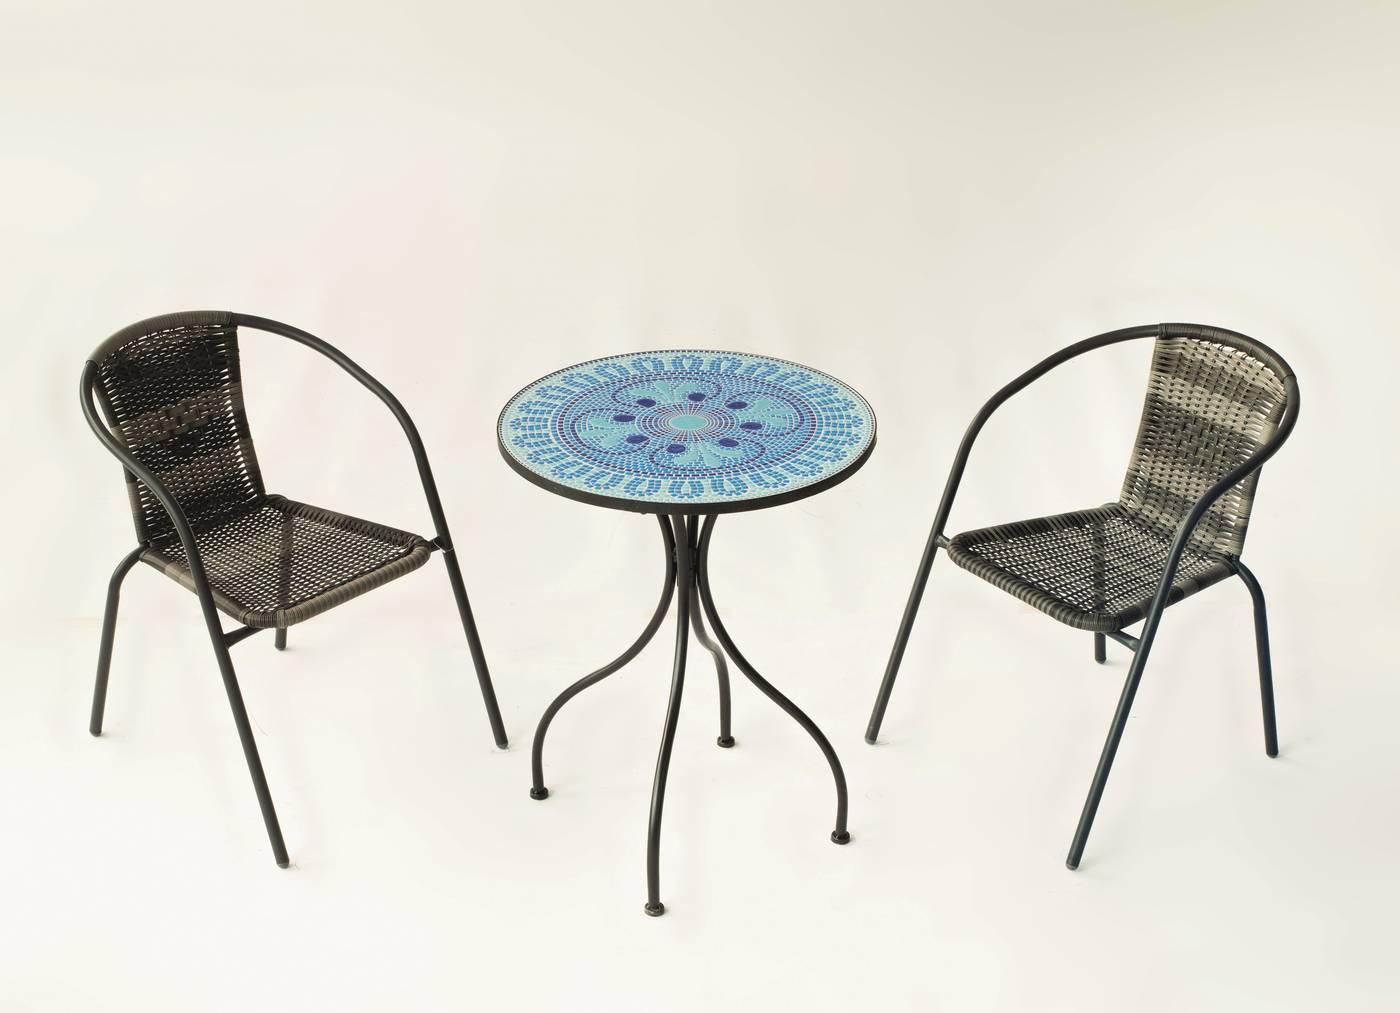 Set Mosaico Berna-Santana - Conjunto de acero color gris: mesa  redonda de acero forjado, con tablero mosaico de 60 cm. + 2 sillones apilables de wicker